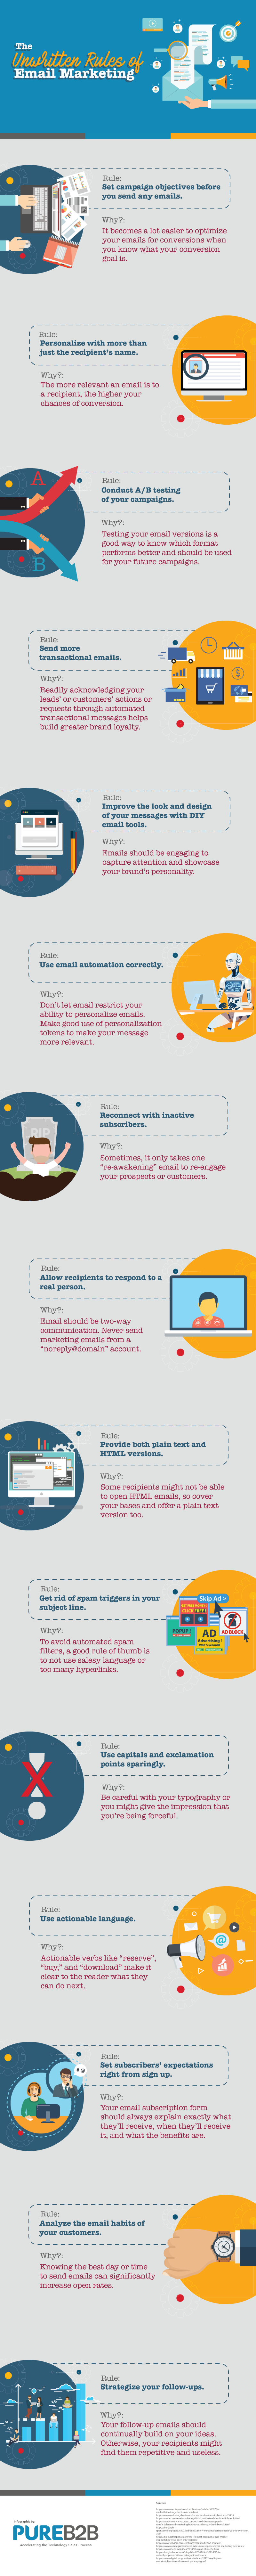 Las reglas no escritas del marketing por correo electrónico (infografía)